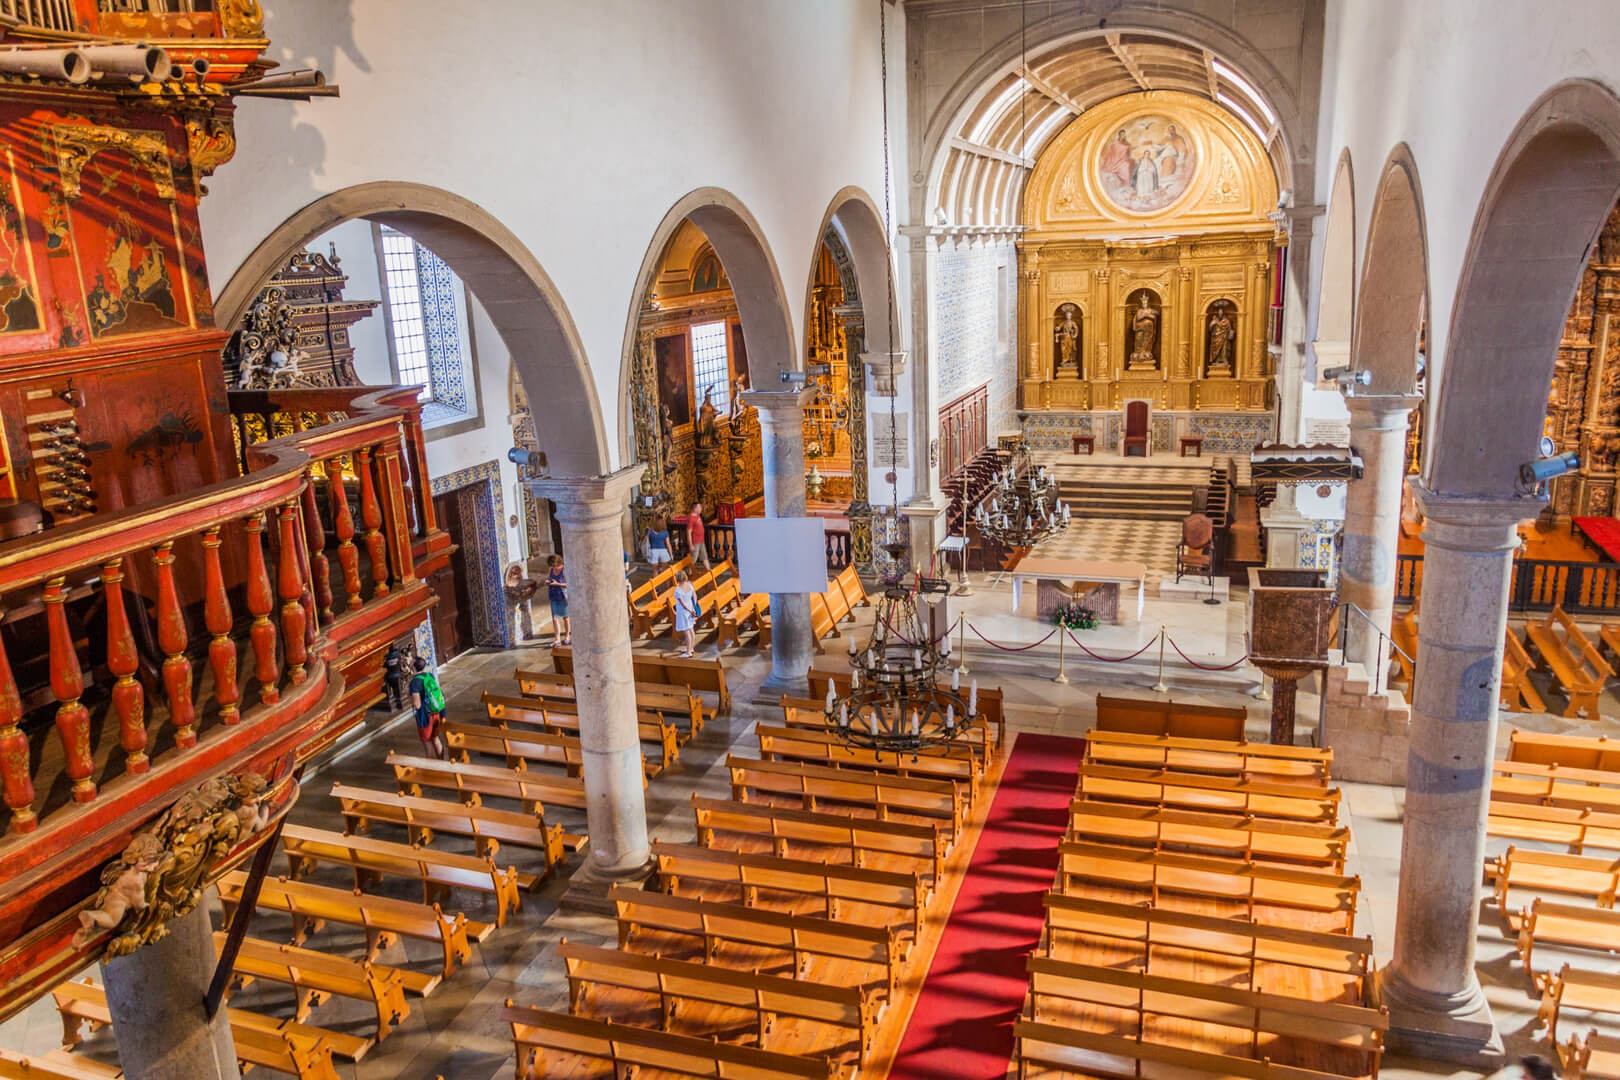  Interior of the Cathedral of Faro (Se de Faro), Portugal
